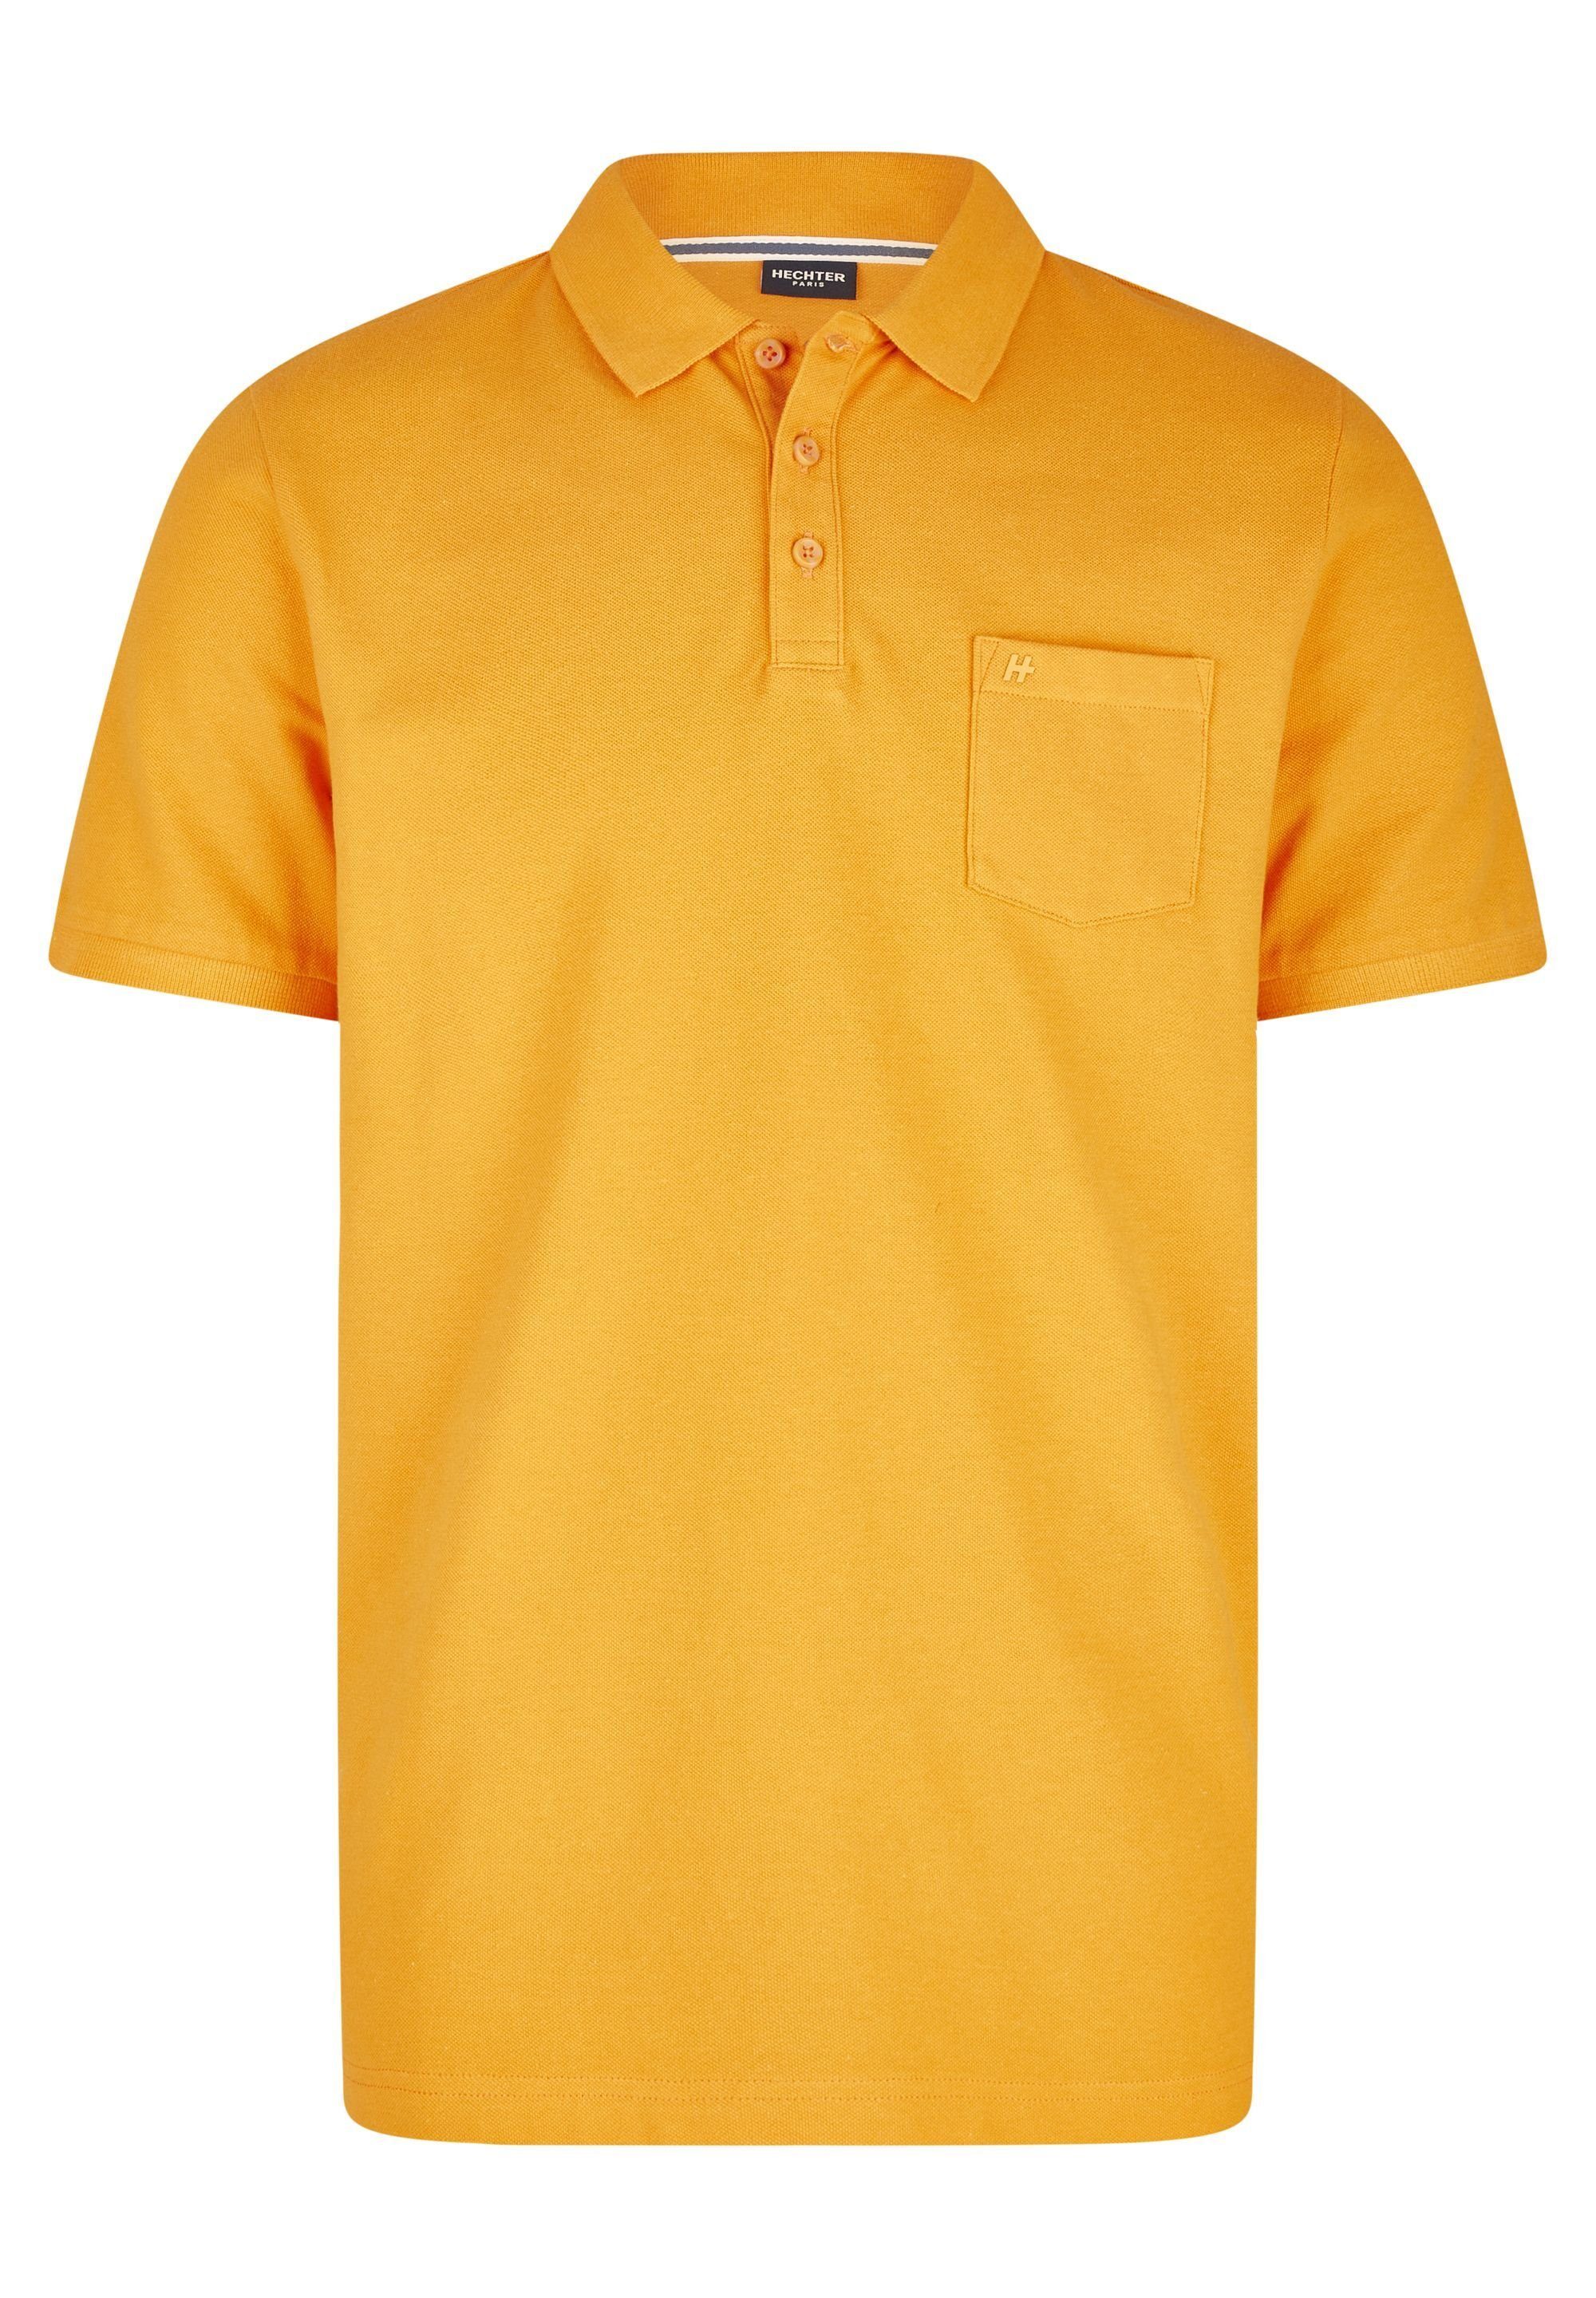 HECHTER PARIS Poloshirt orange mit polokrage